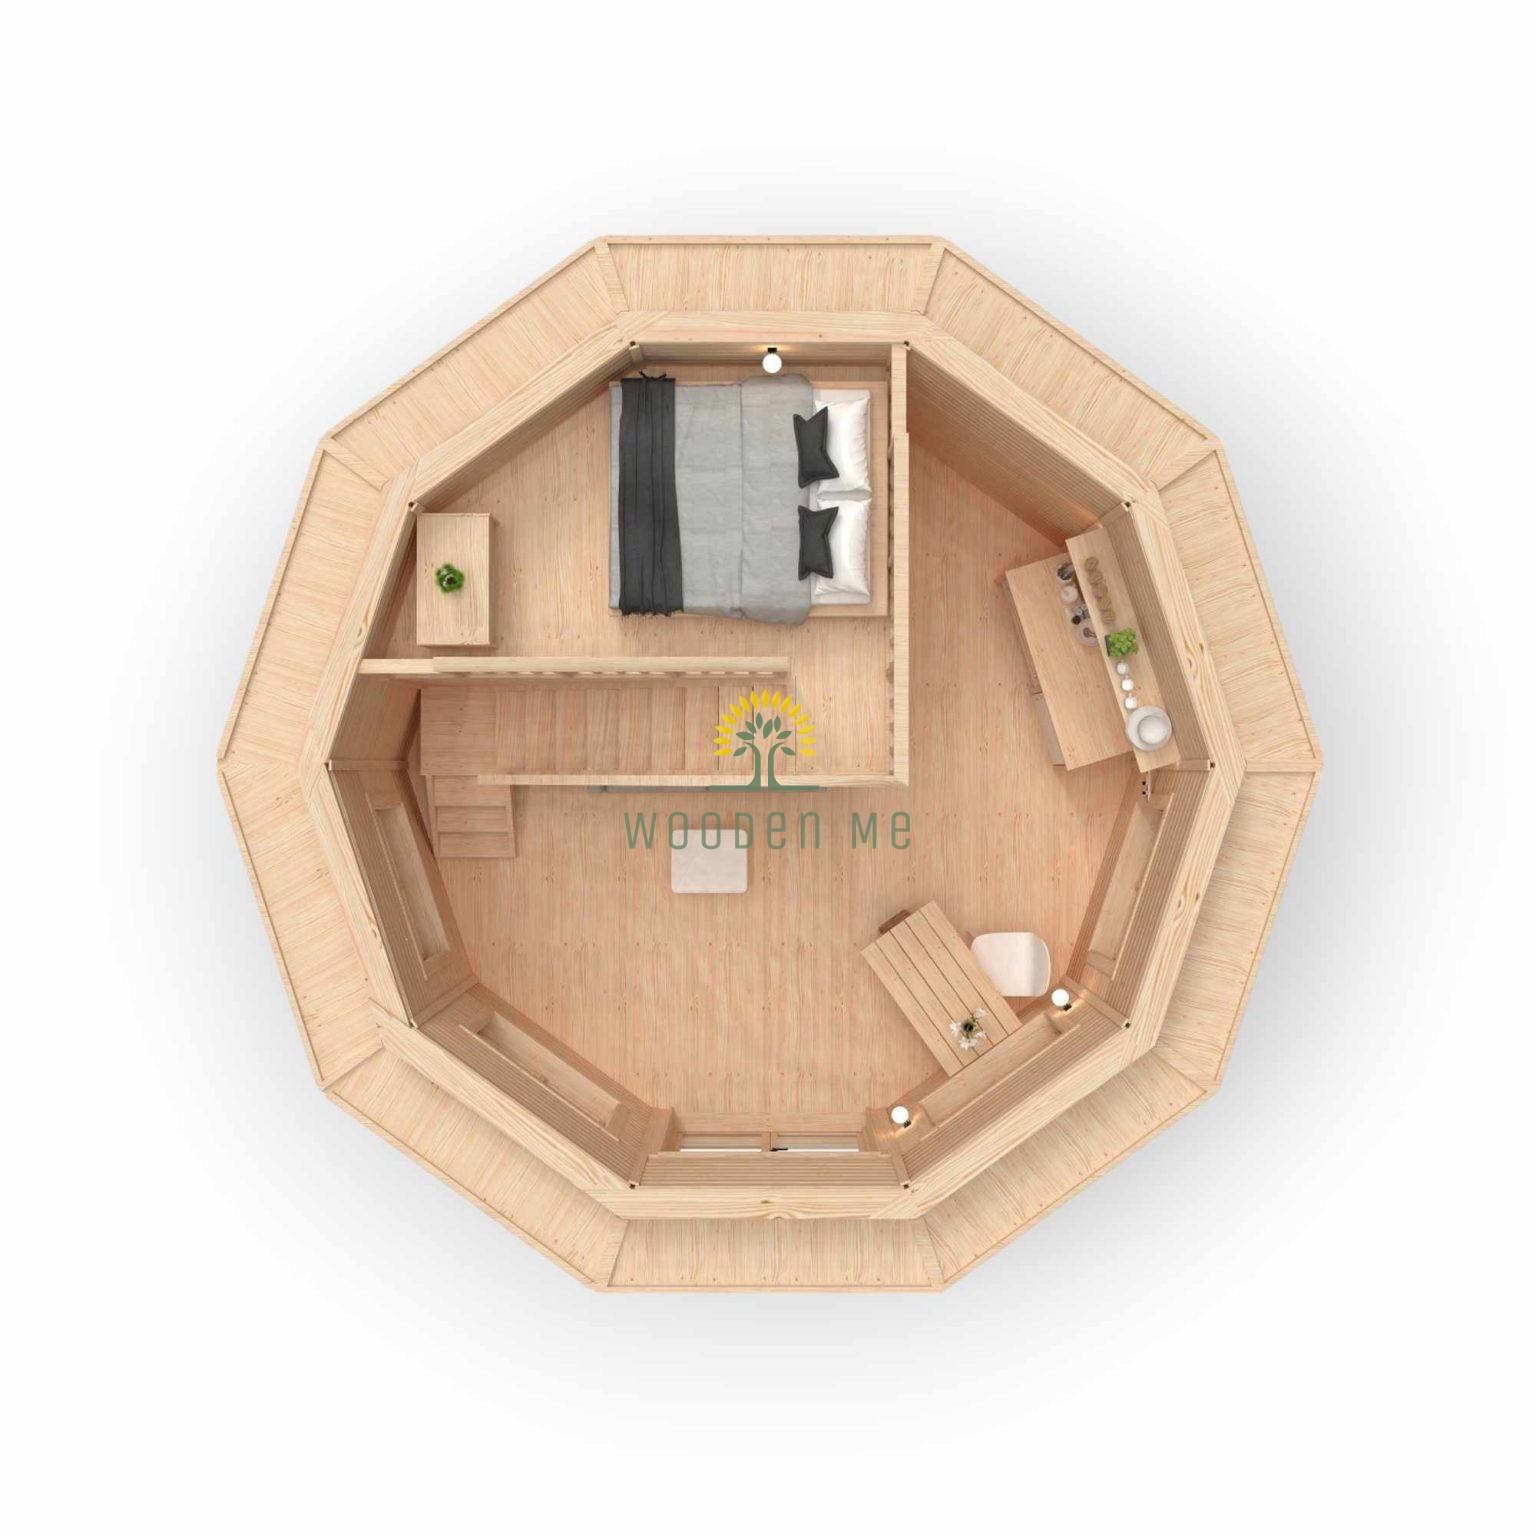 Loft cabin 25.0 m²